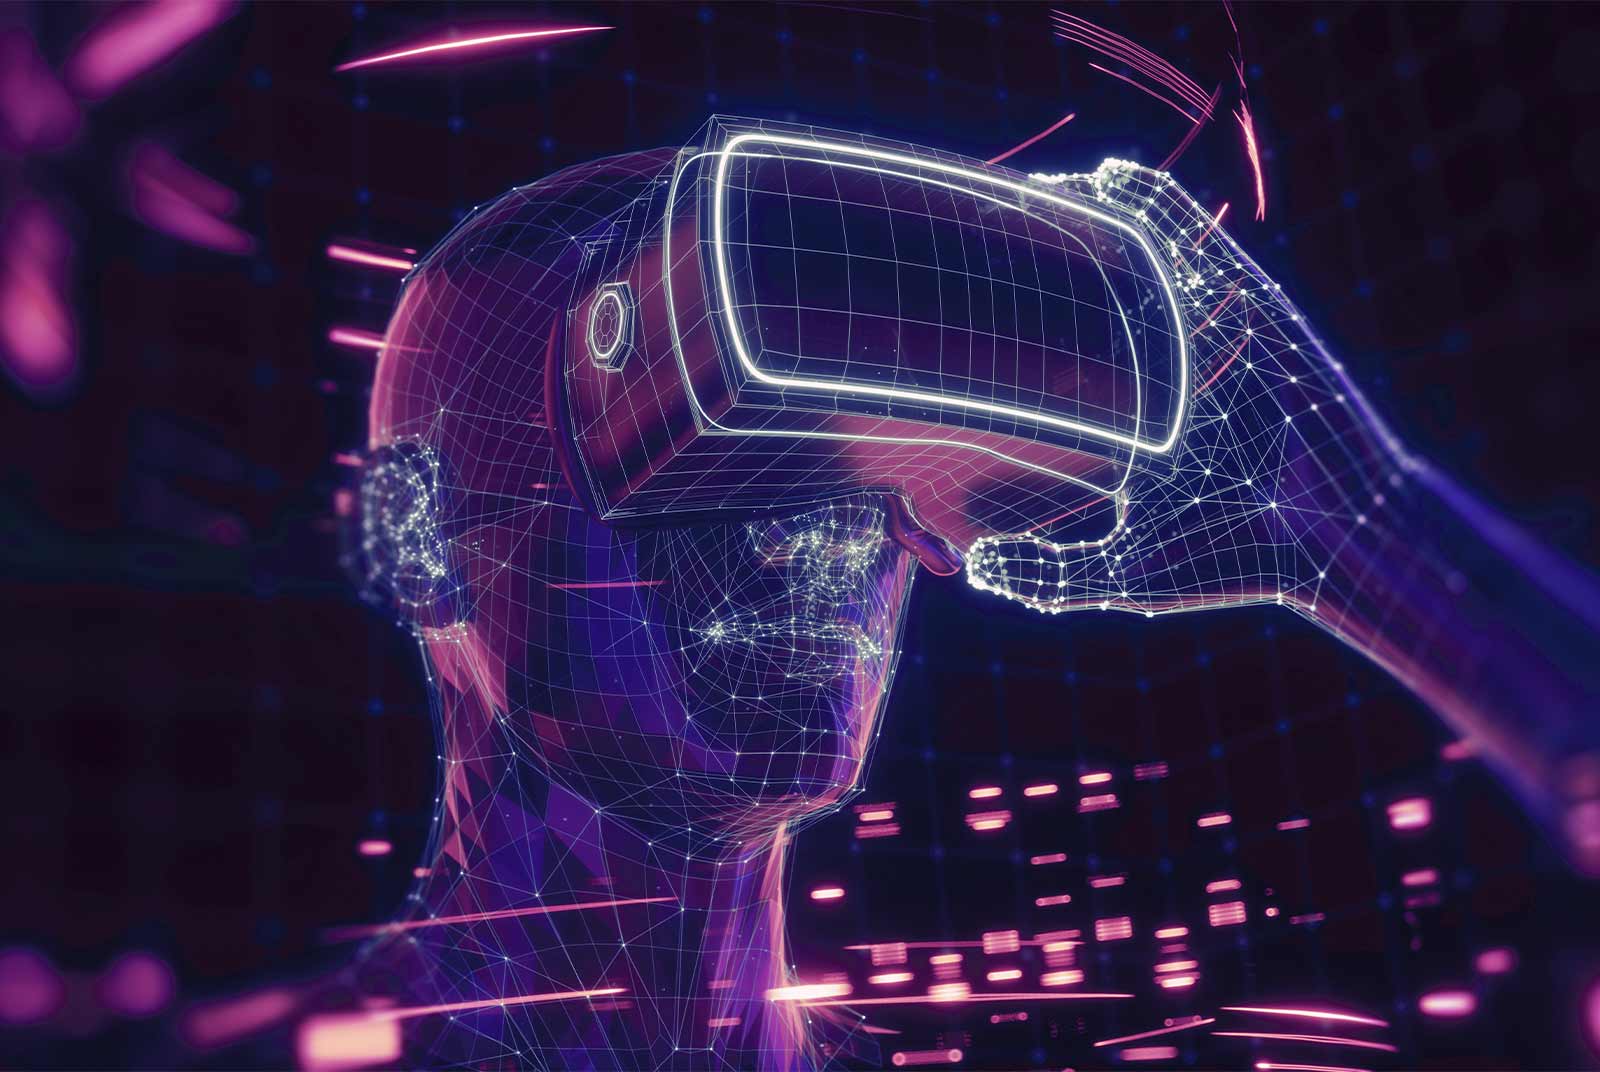 这是一张展示虚拟现实头盔和手套的图像，呈现出数字化和科技感，暗示着沉浸式体验或虚拟现实技术的概念。